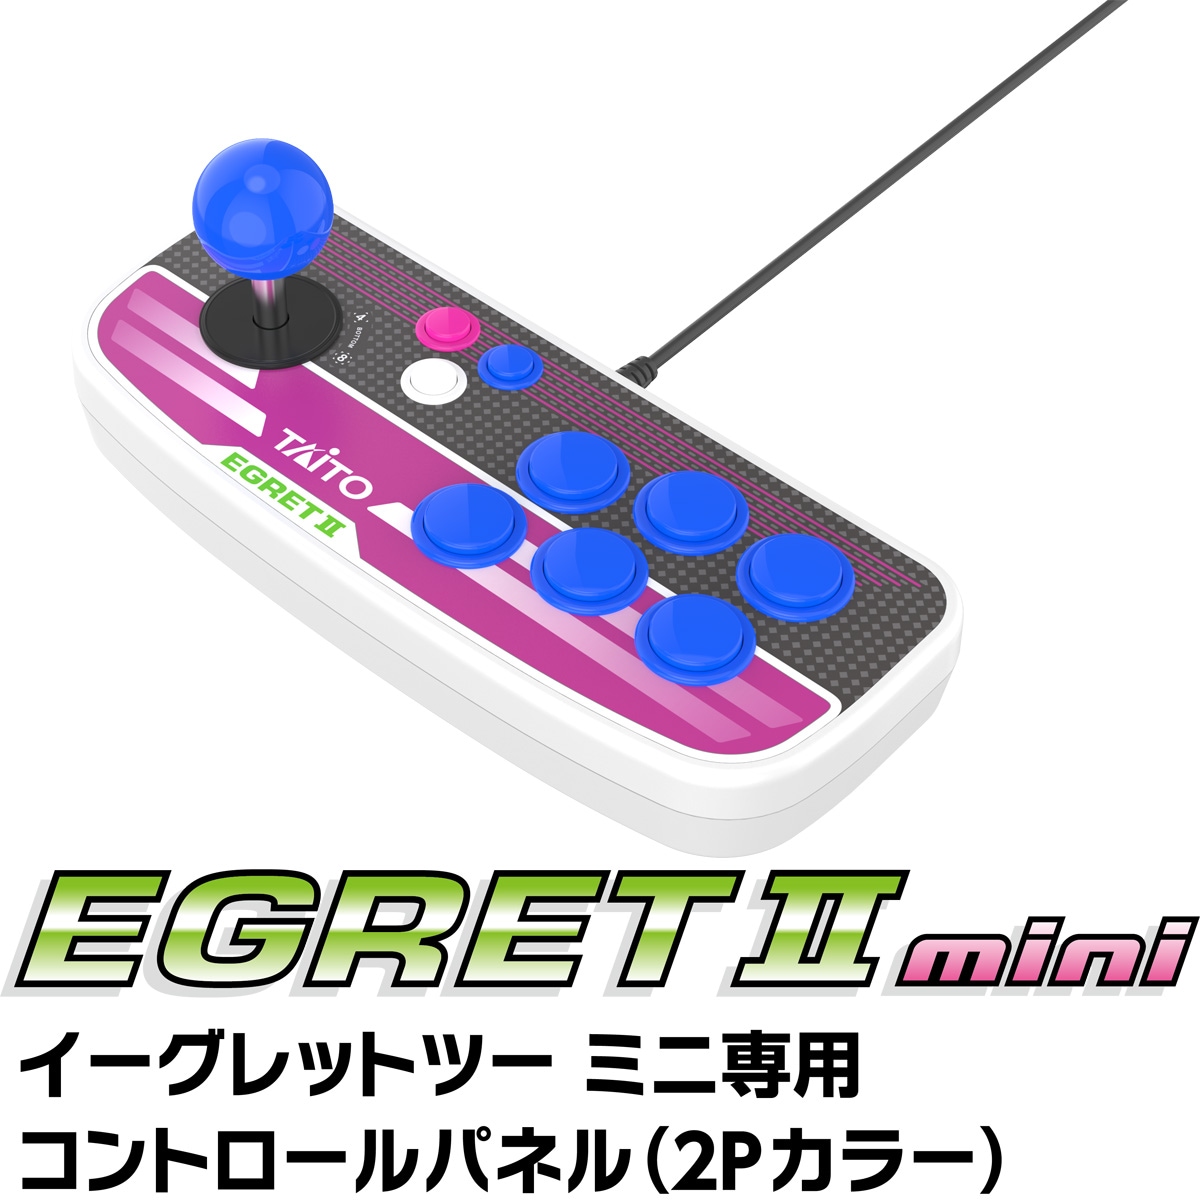 タイトー EGRET II mini 専用コントロールパネル(2Pカラー) 価格比較